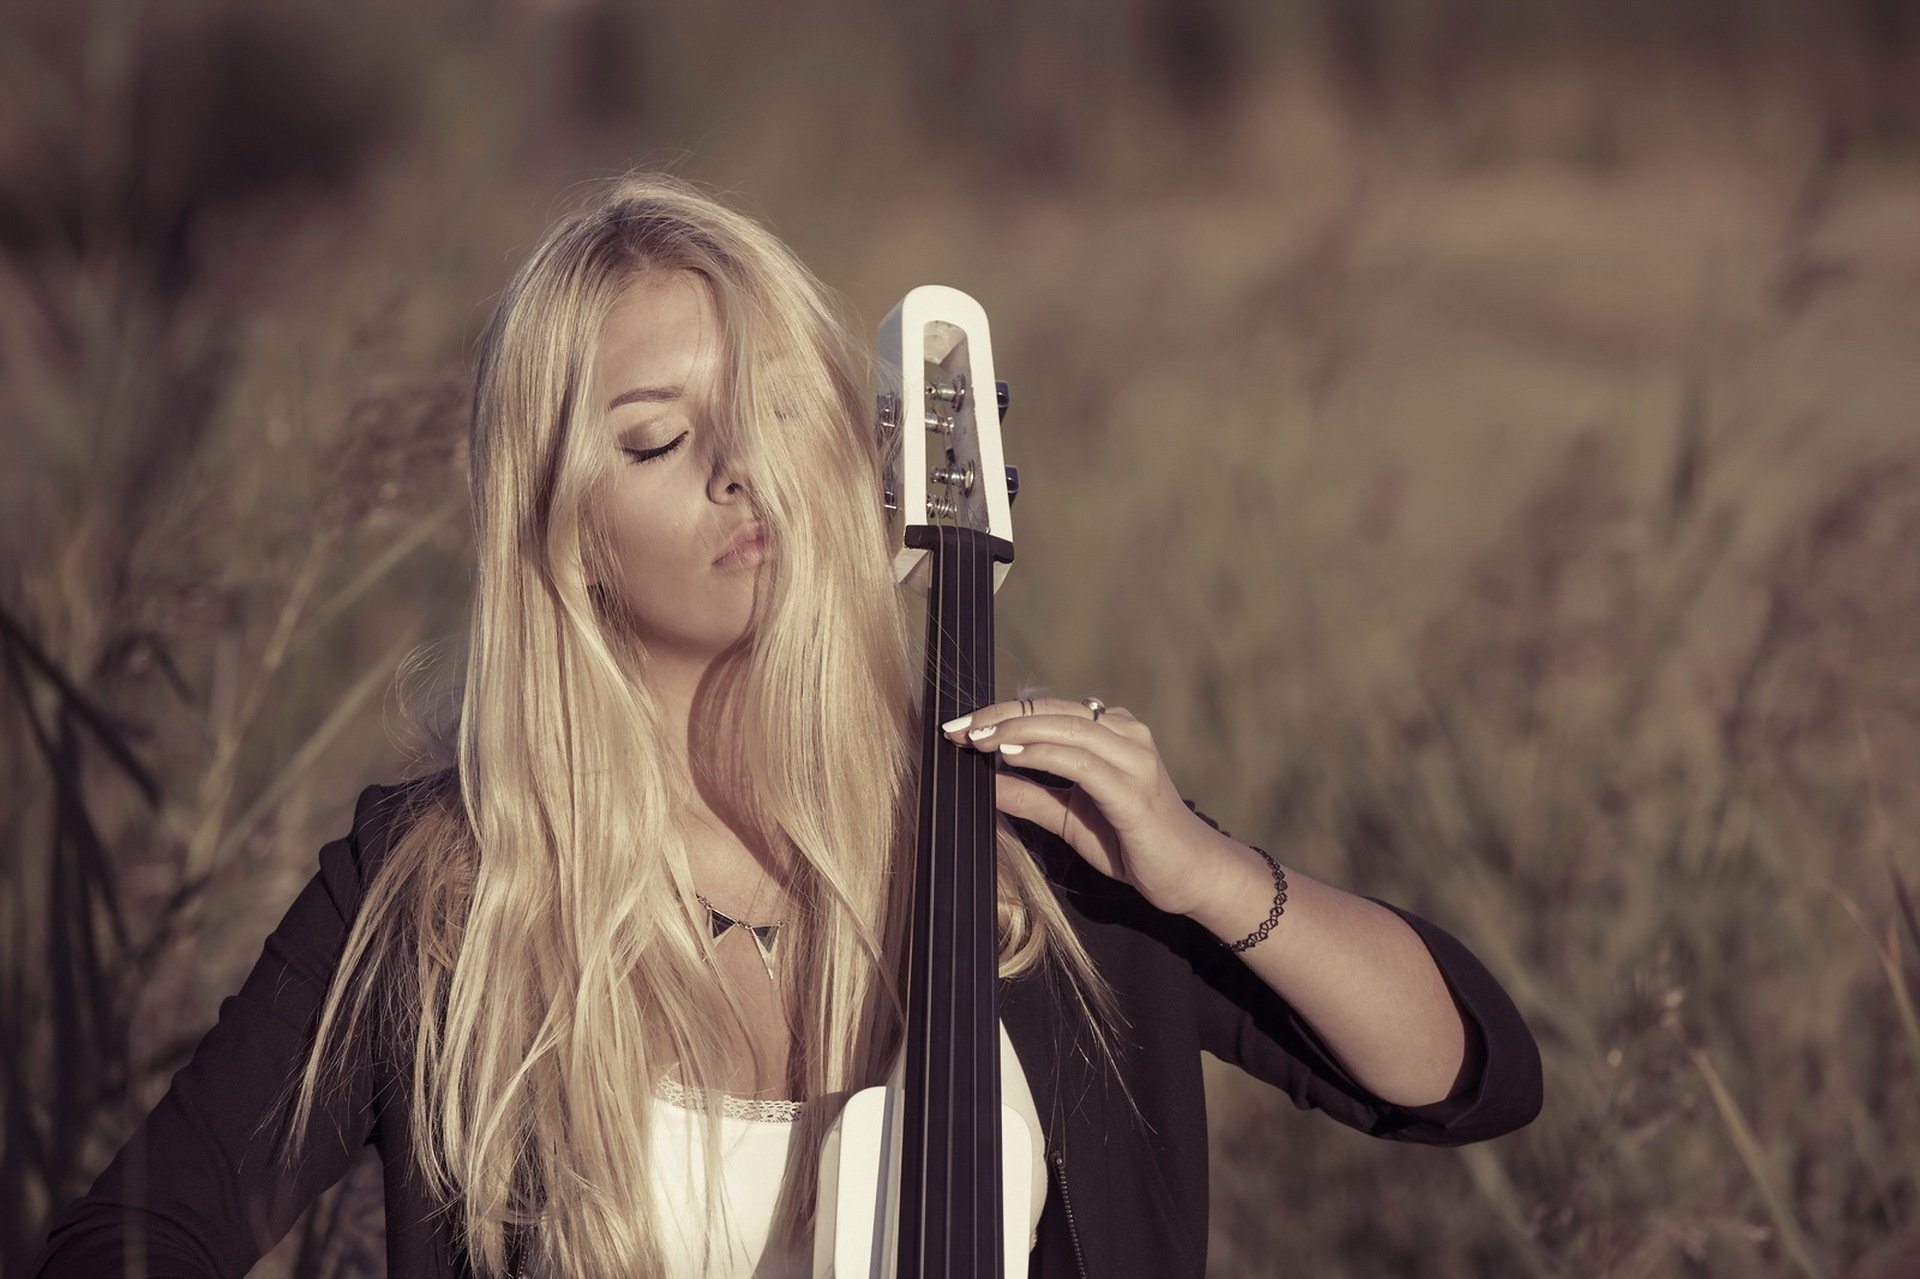 Блонда музыка. Девушка с инструментом. Музыка блондинка. Девушка с инструментом музыкальным на фоне неба. Фото для группы с музыкой девушки.